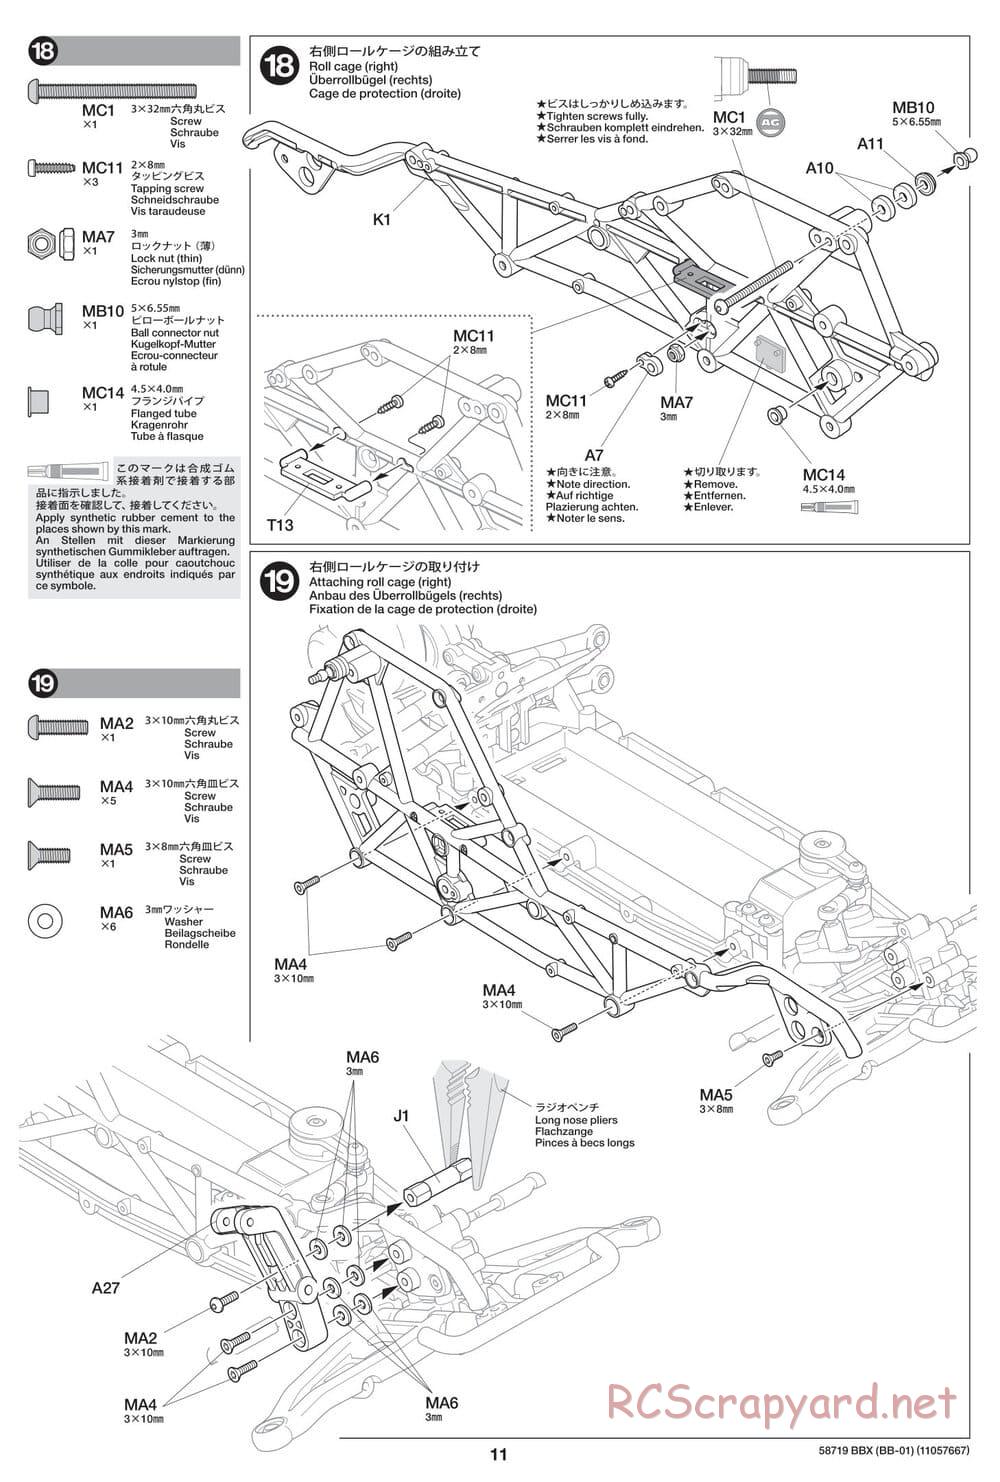 Tamiya - BBX - BB-01 Chassis - Manual - Page 11